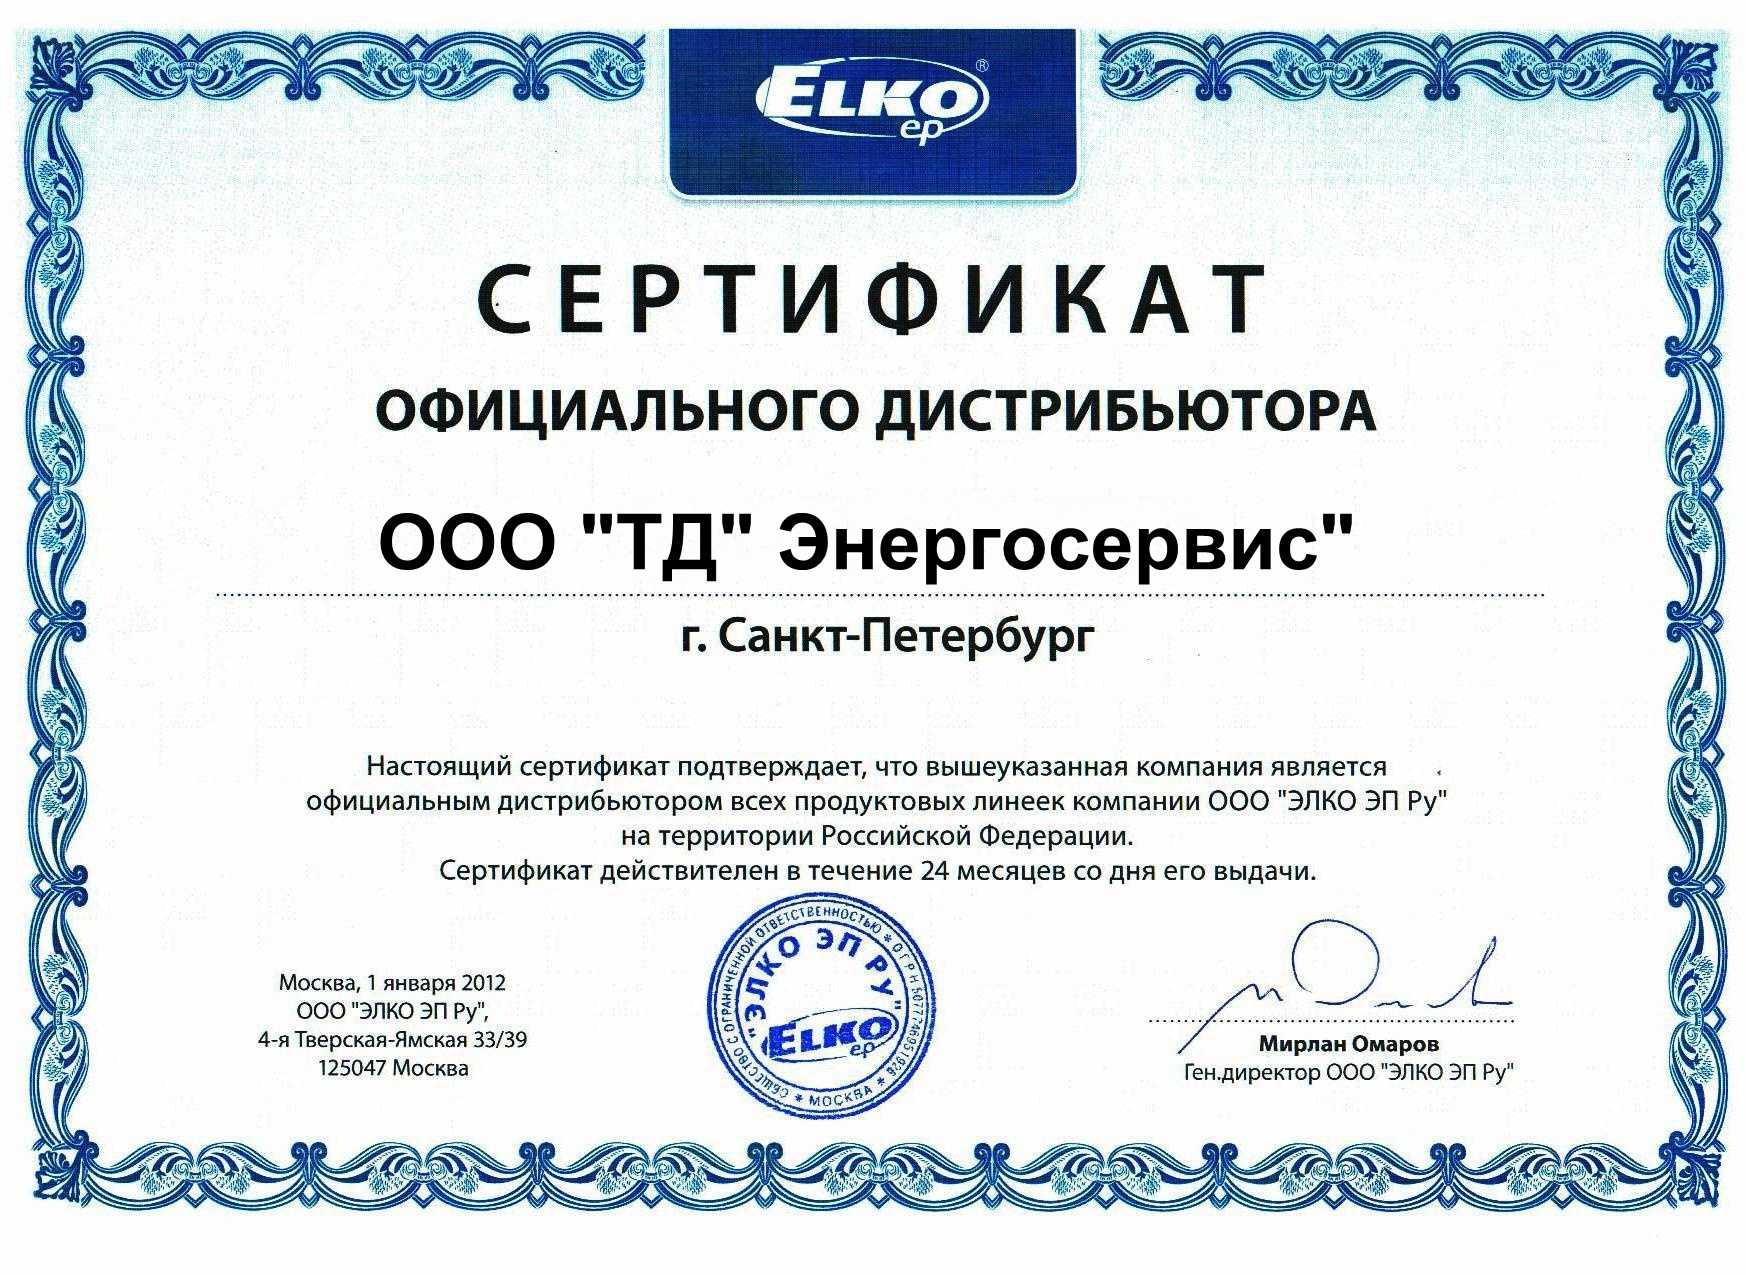 Представителем ооо является. Сертификат дистрибьютора. Сертификат официального дистрибьютора. Сертификат дистрибьютера.